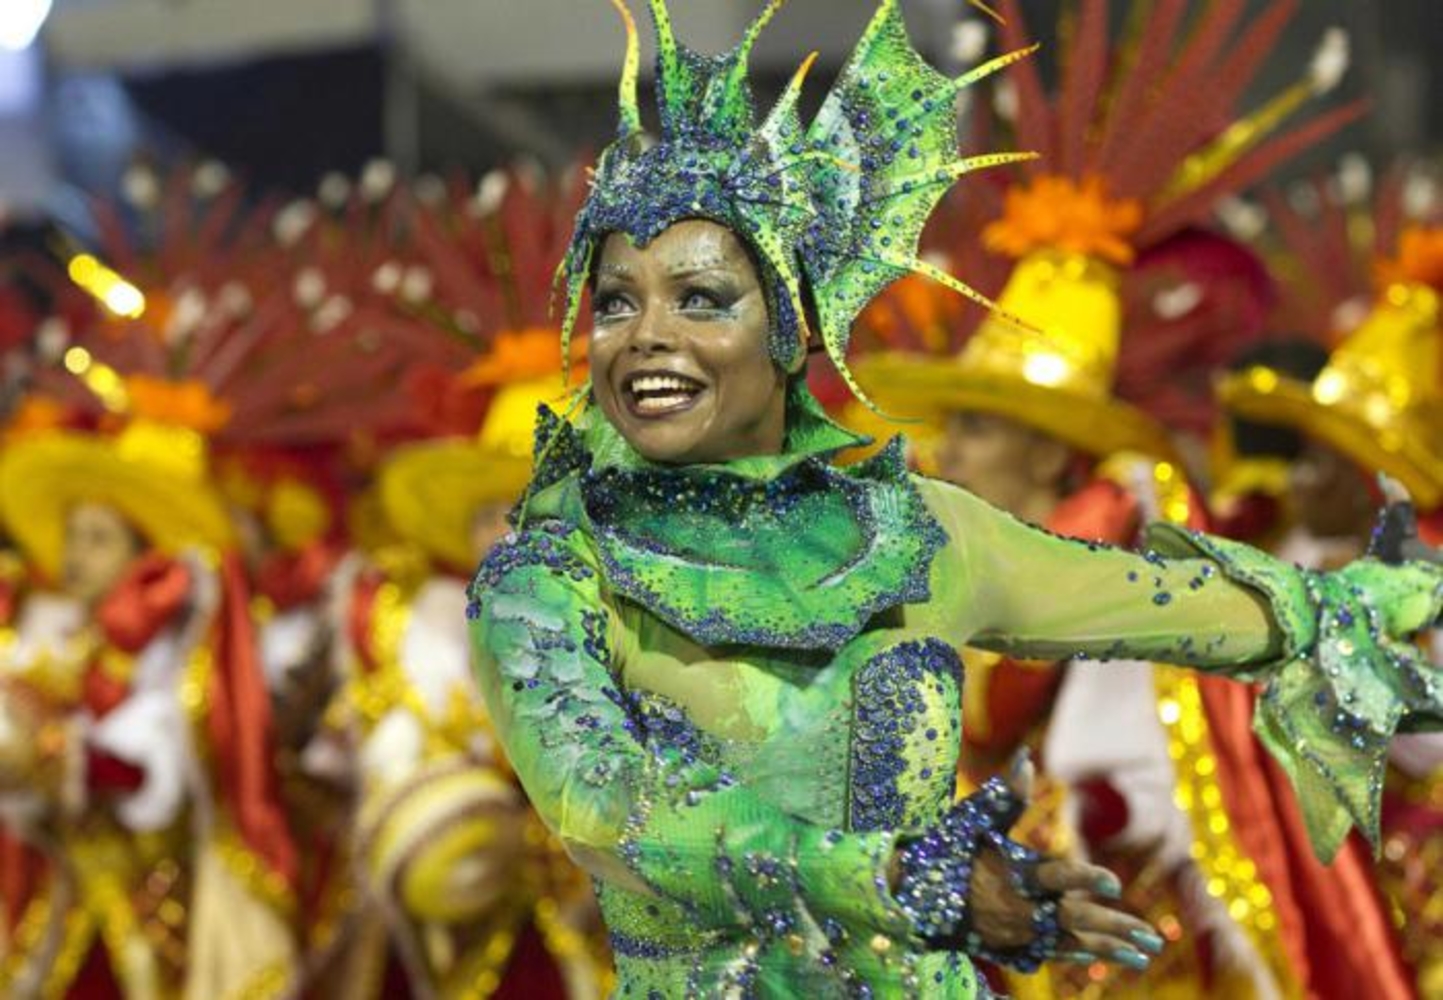 Звезды карнавала. Карнавал в Бразилии. Рио-де-Жанейро карнавал костюмы дети. Маскарад в Рио де Жанейро. Карнавал бразильский карнавал.